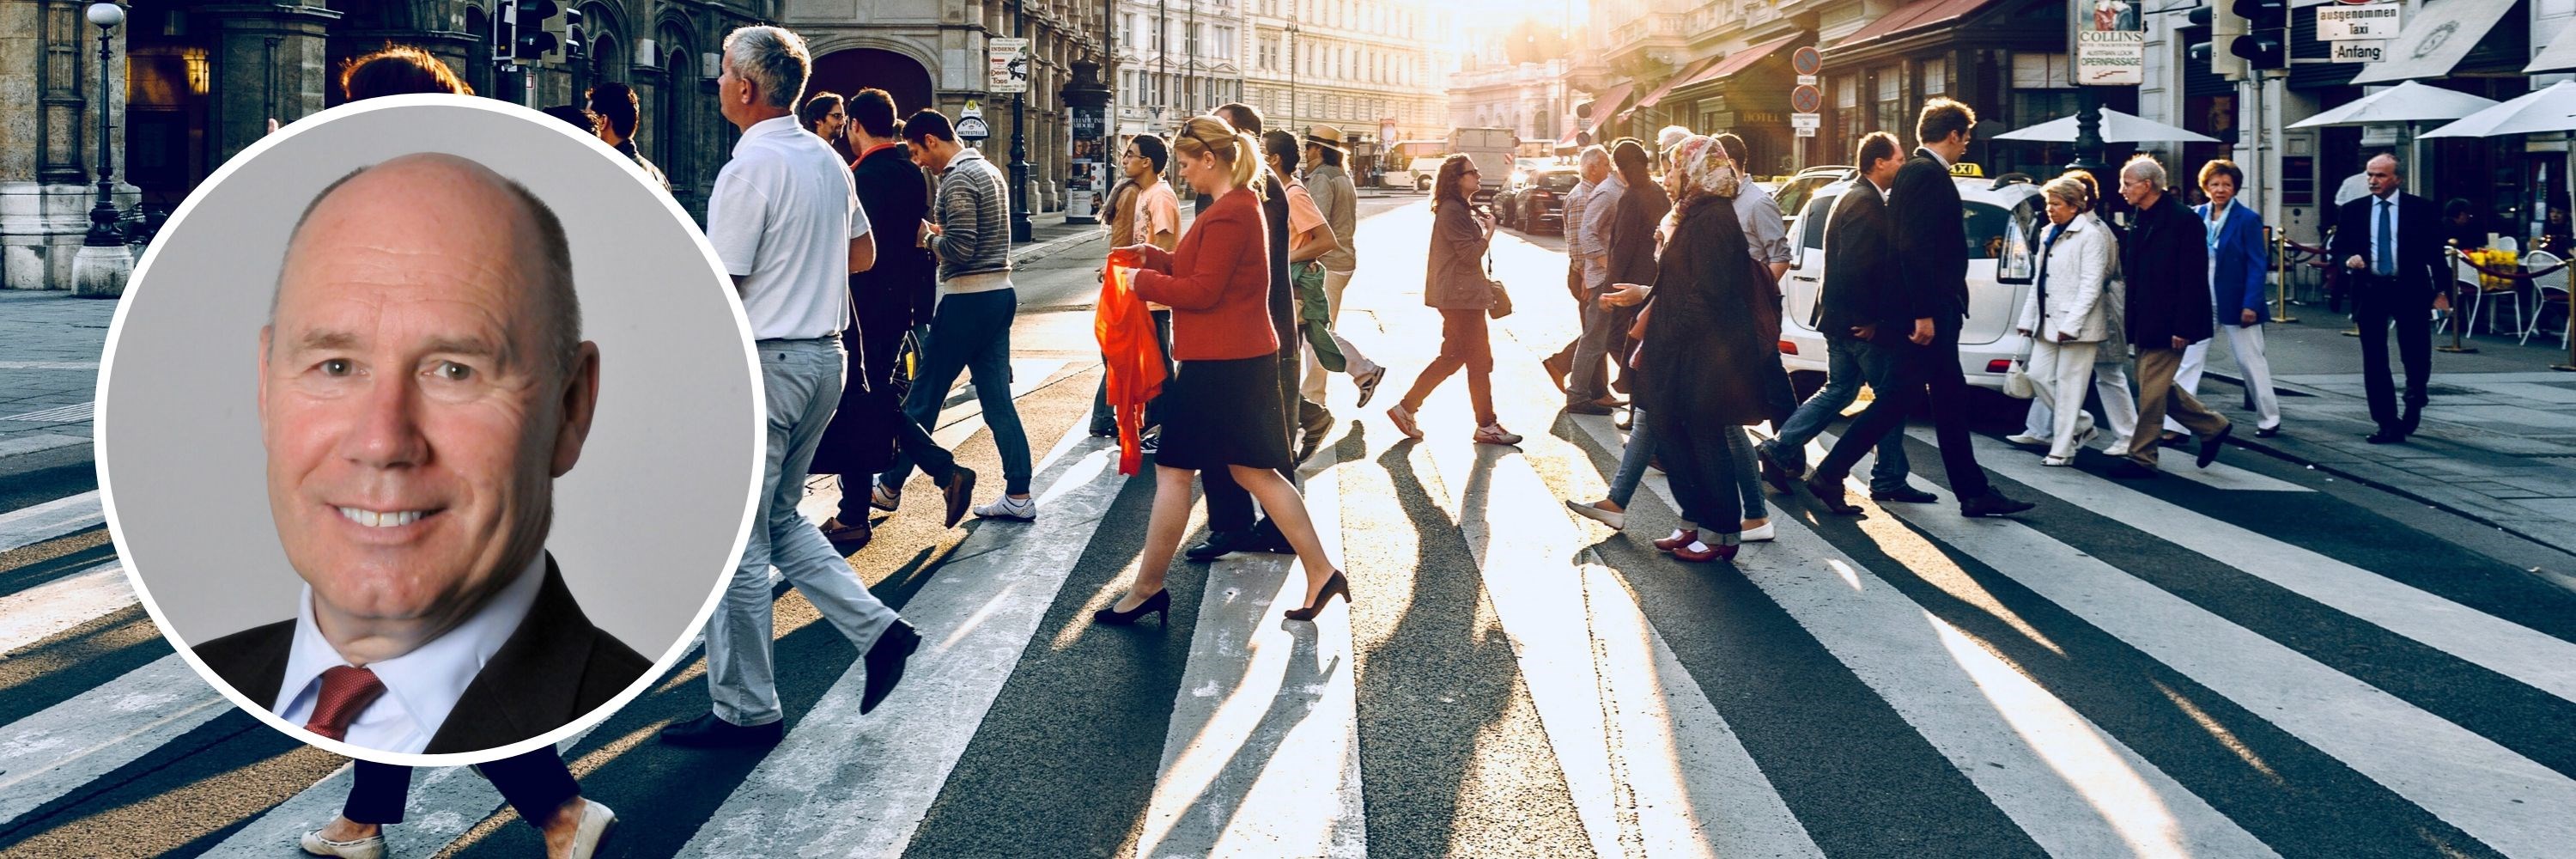 Tor W. Andreassen og mennesker som går over vei. Foto: Unsplash/NHH